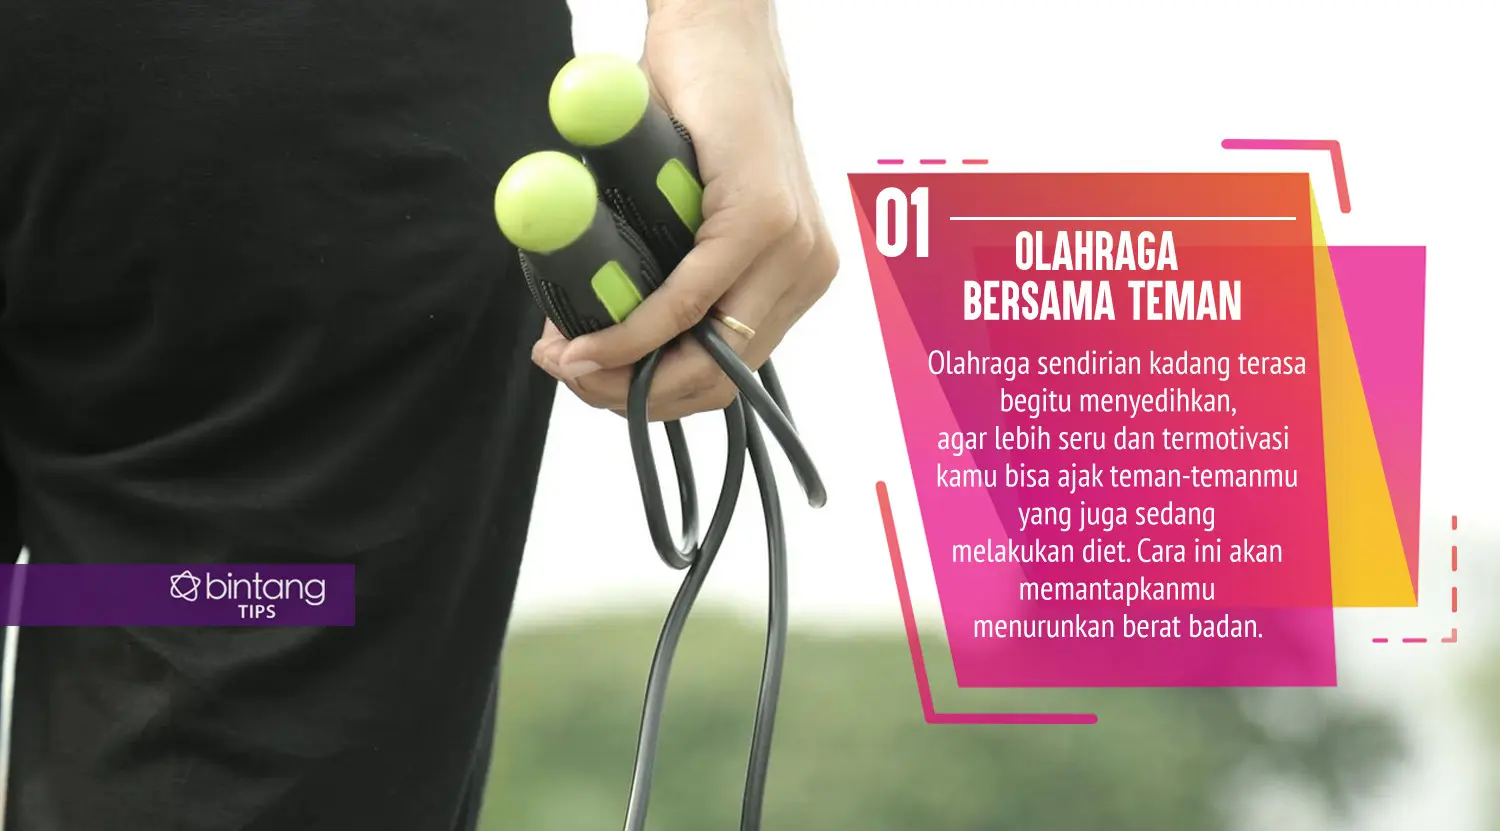 Menurunkan berat badan lebih menyenangkan dengan cara ini. (Foto: Daniel Kampua, Digital Imaging: Nurman Abdul Hakim/Bintang.com)